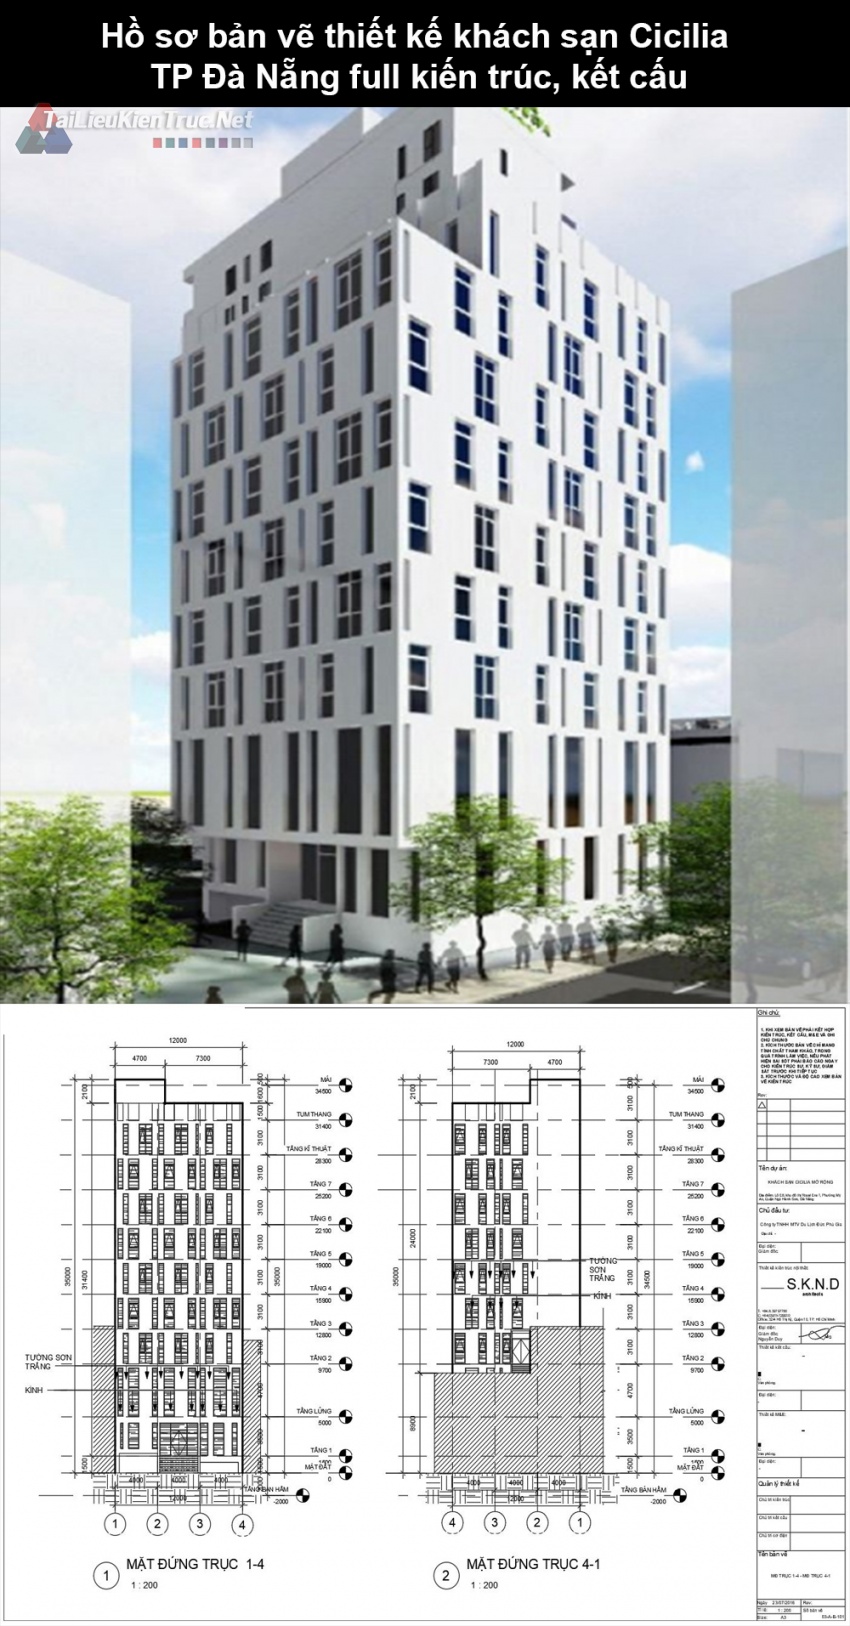 Hồ sơ bản vẽ thiết kế khách sạn Cicilia TP Đà Nẵng full kiến trúc, kết cấu